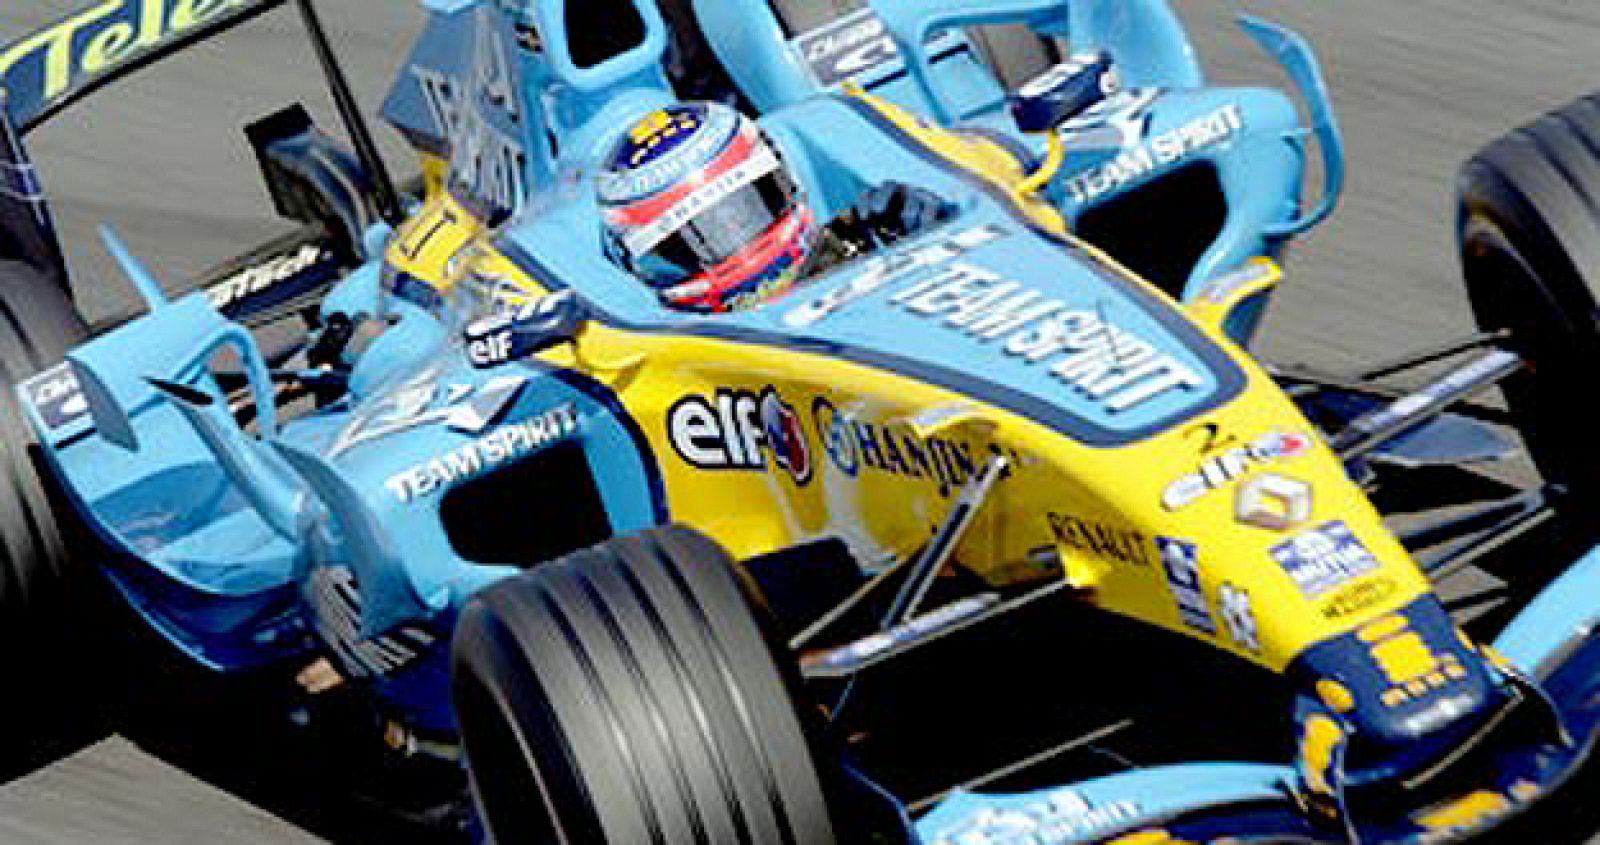 Fernando Alonso consiguió ganar dos campeonatos del mundo de Fórmula Uno con Renault, en 2005 y 2006.